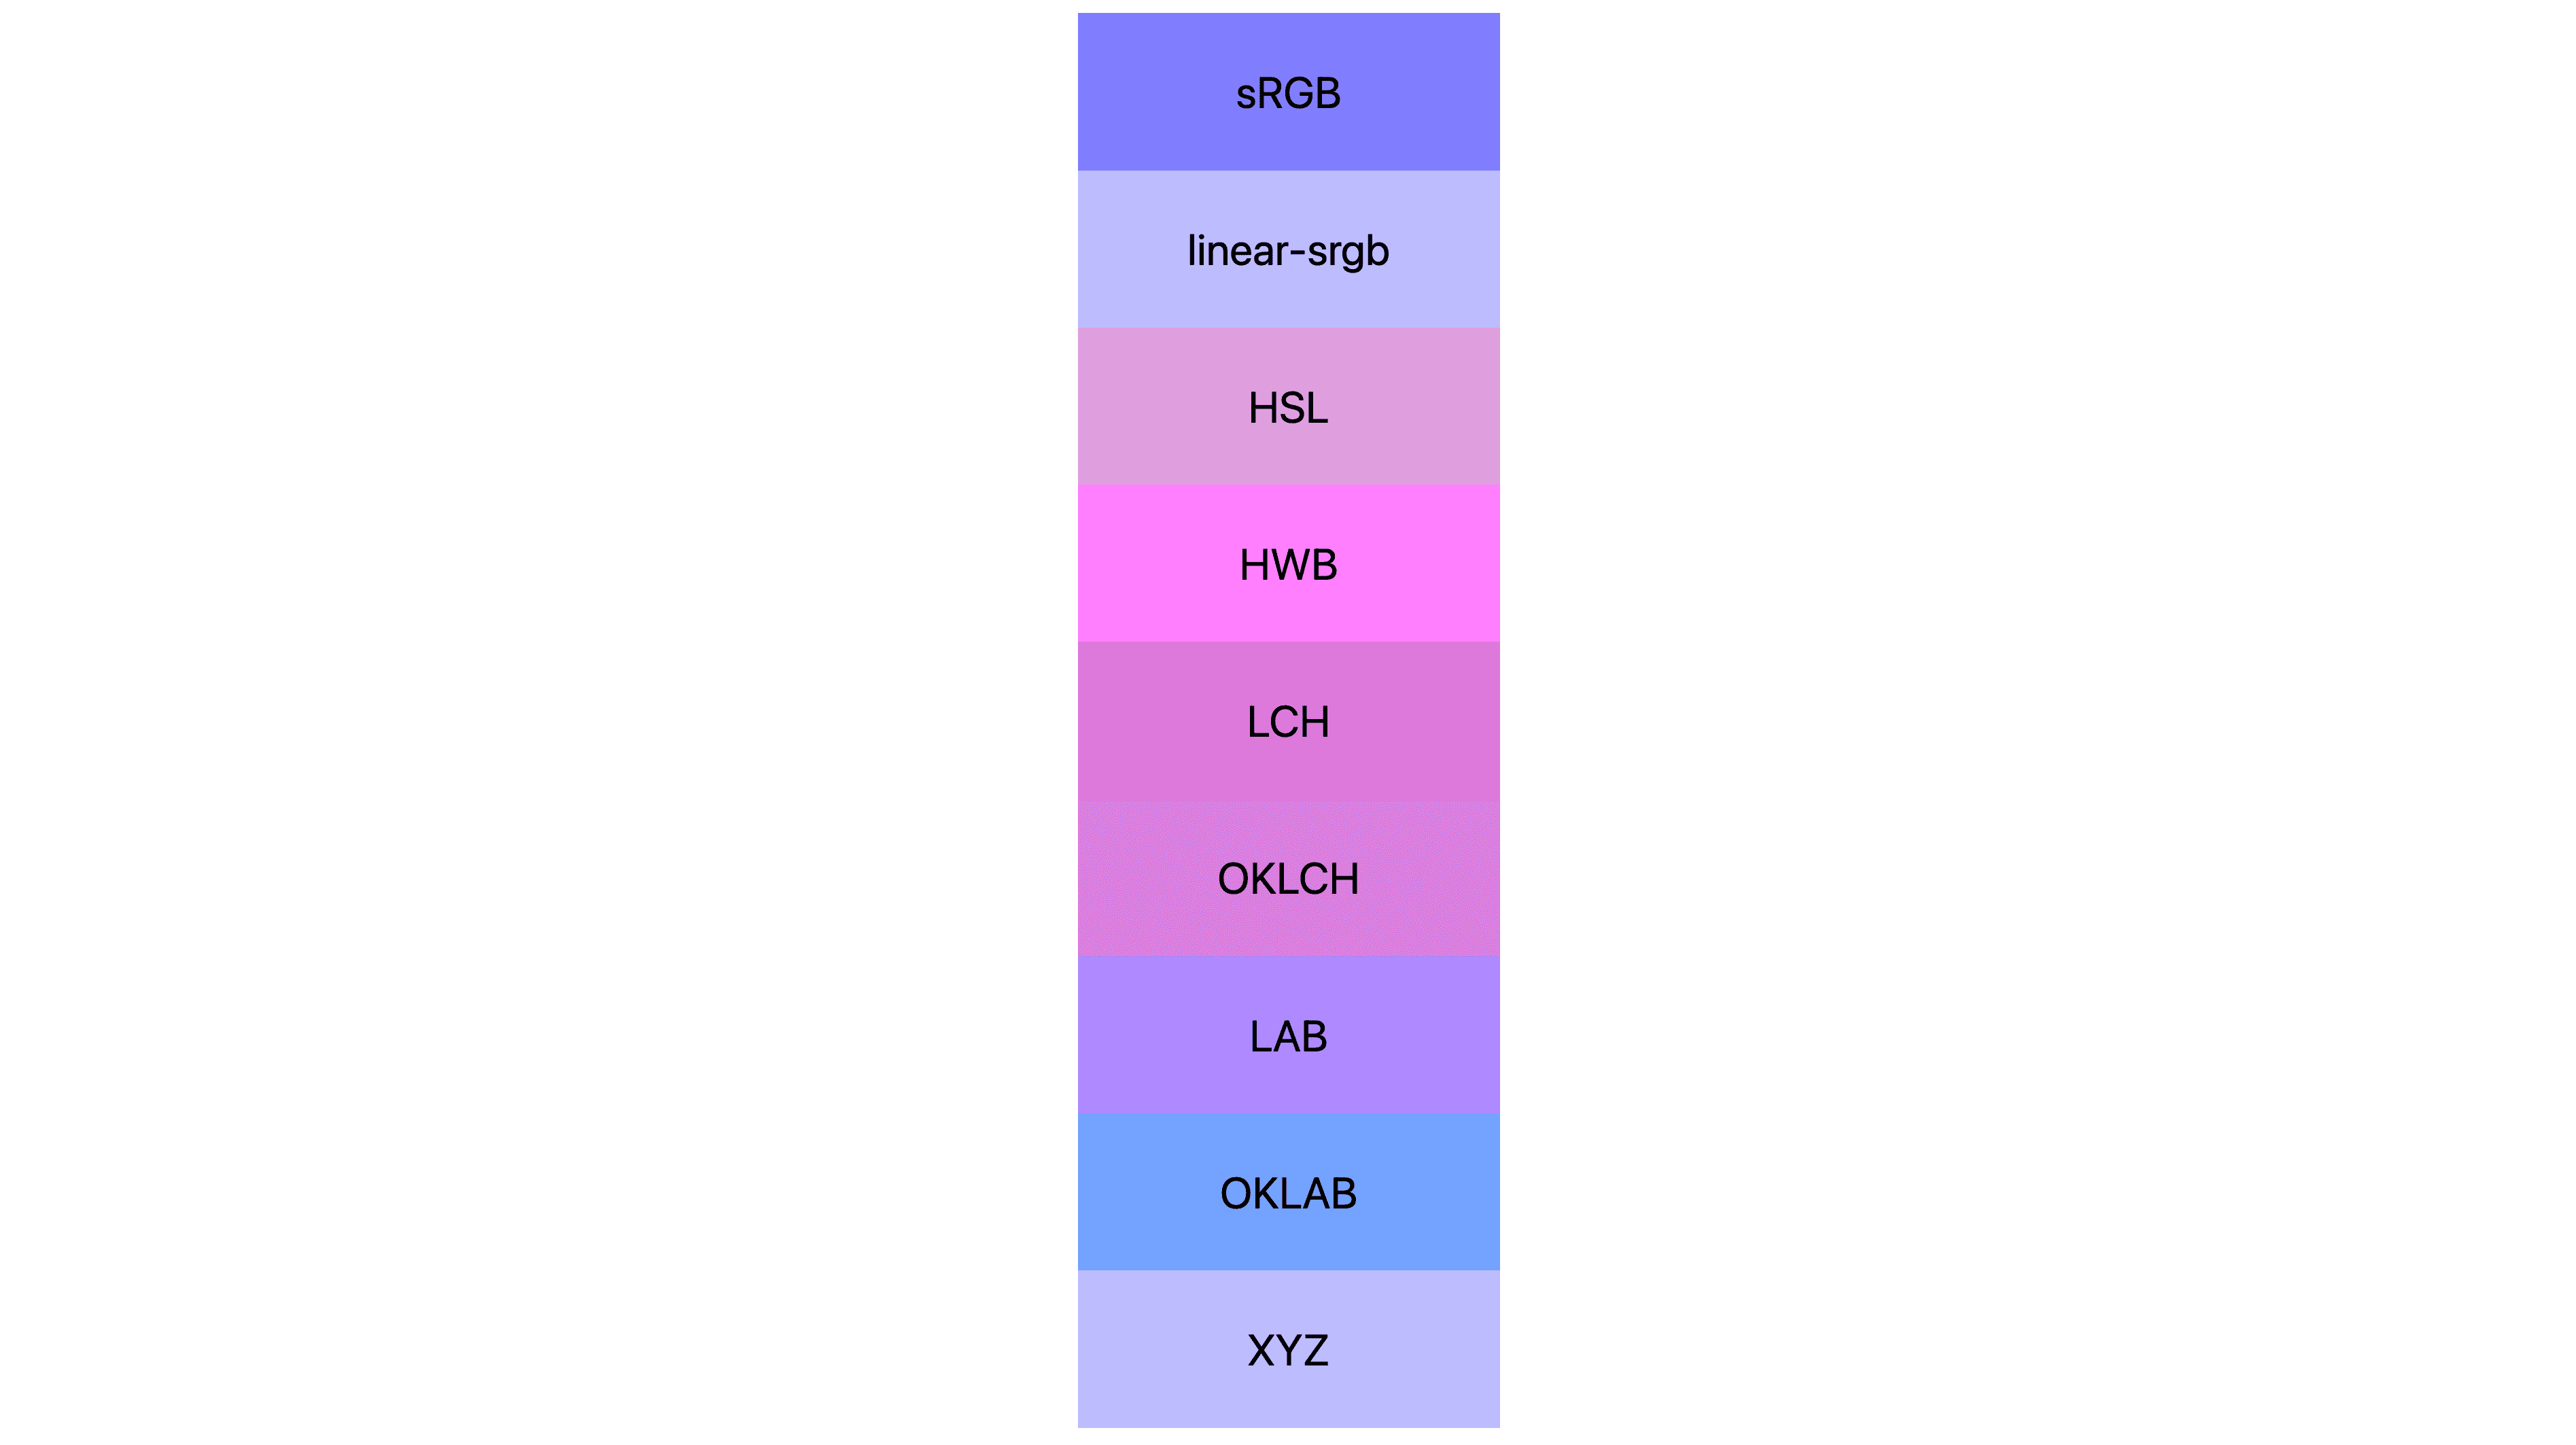 7가지 색상 공간 (srgb, linear-srgb, lch, oklch, lab, oklab, xyz)가 각각 다른 결과가 표시되어 있습니다. 대부분 분홍색이나 보라색이며, 여전히 파란색인 것이 몇 개 없습니다.